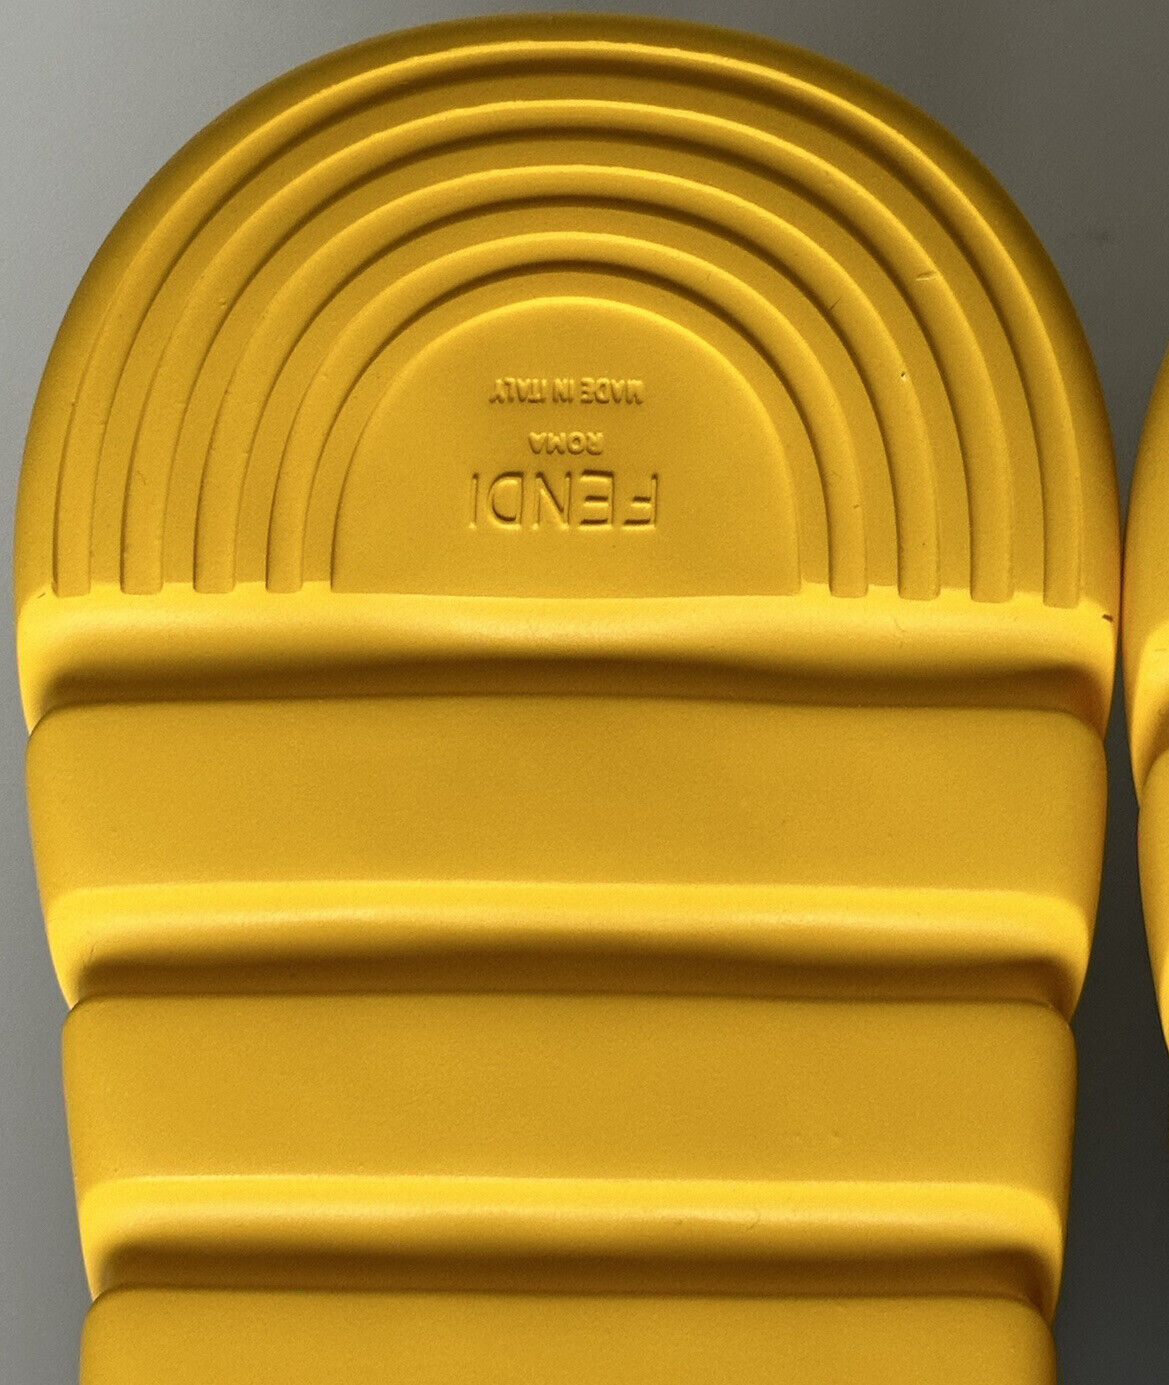 NIB $930 Fendi FF Men's High-top Sock Sneakers Black/Brown 12 US (45) 7E1347